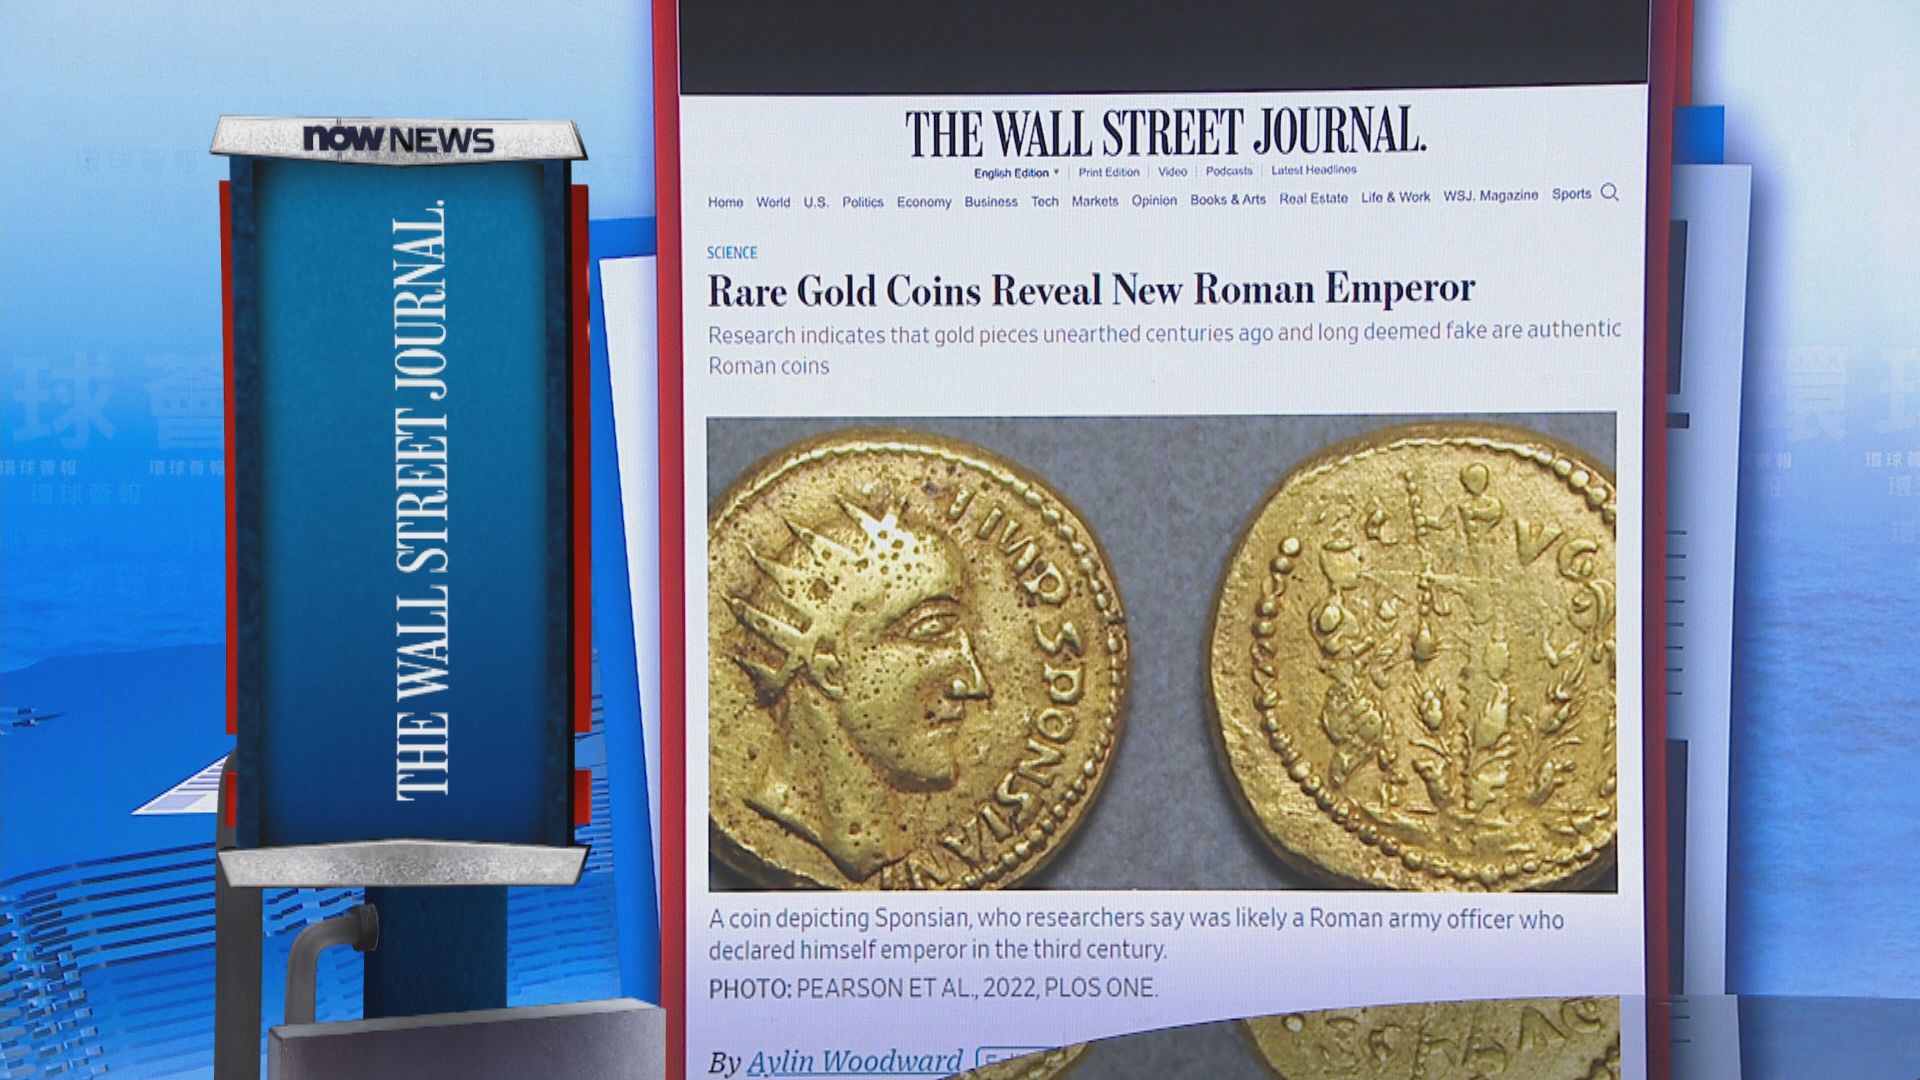 【環球薈報】專家指一批古羅馬金幣或證明有新王帝存在